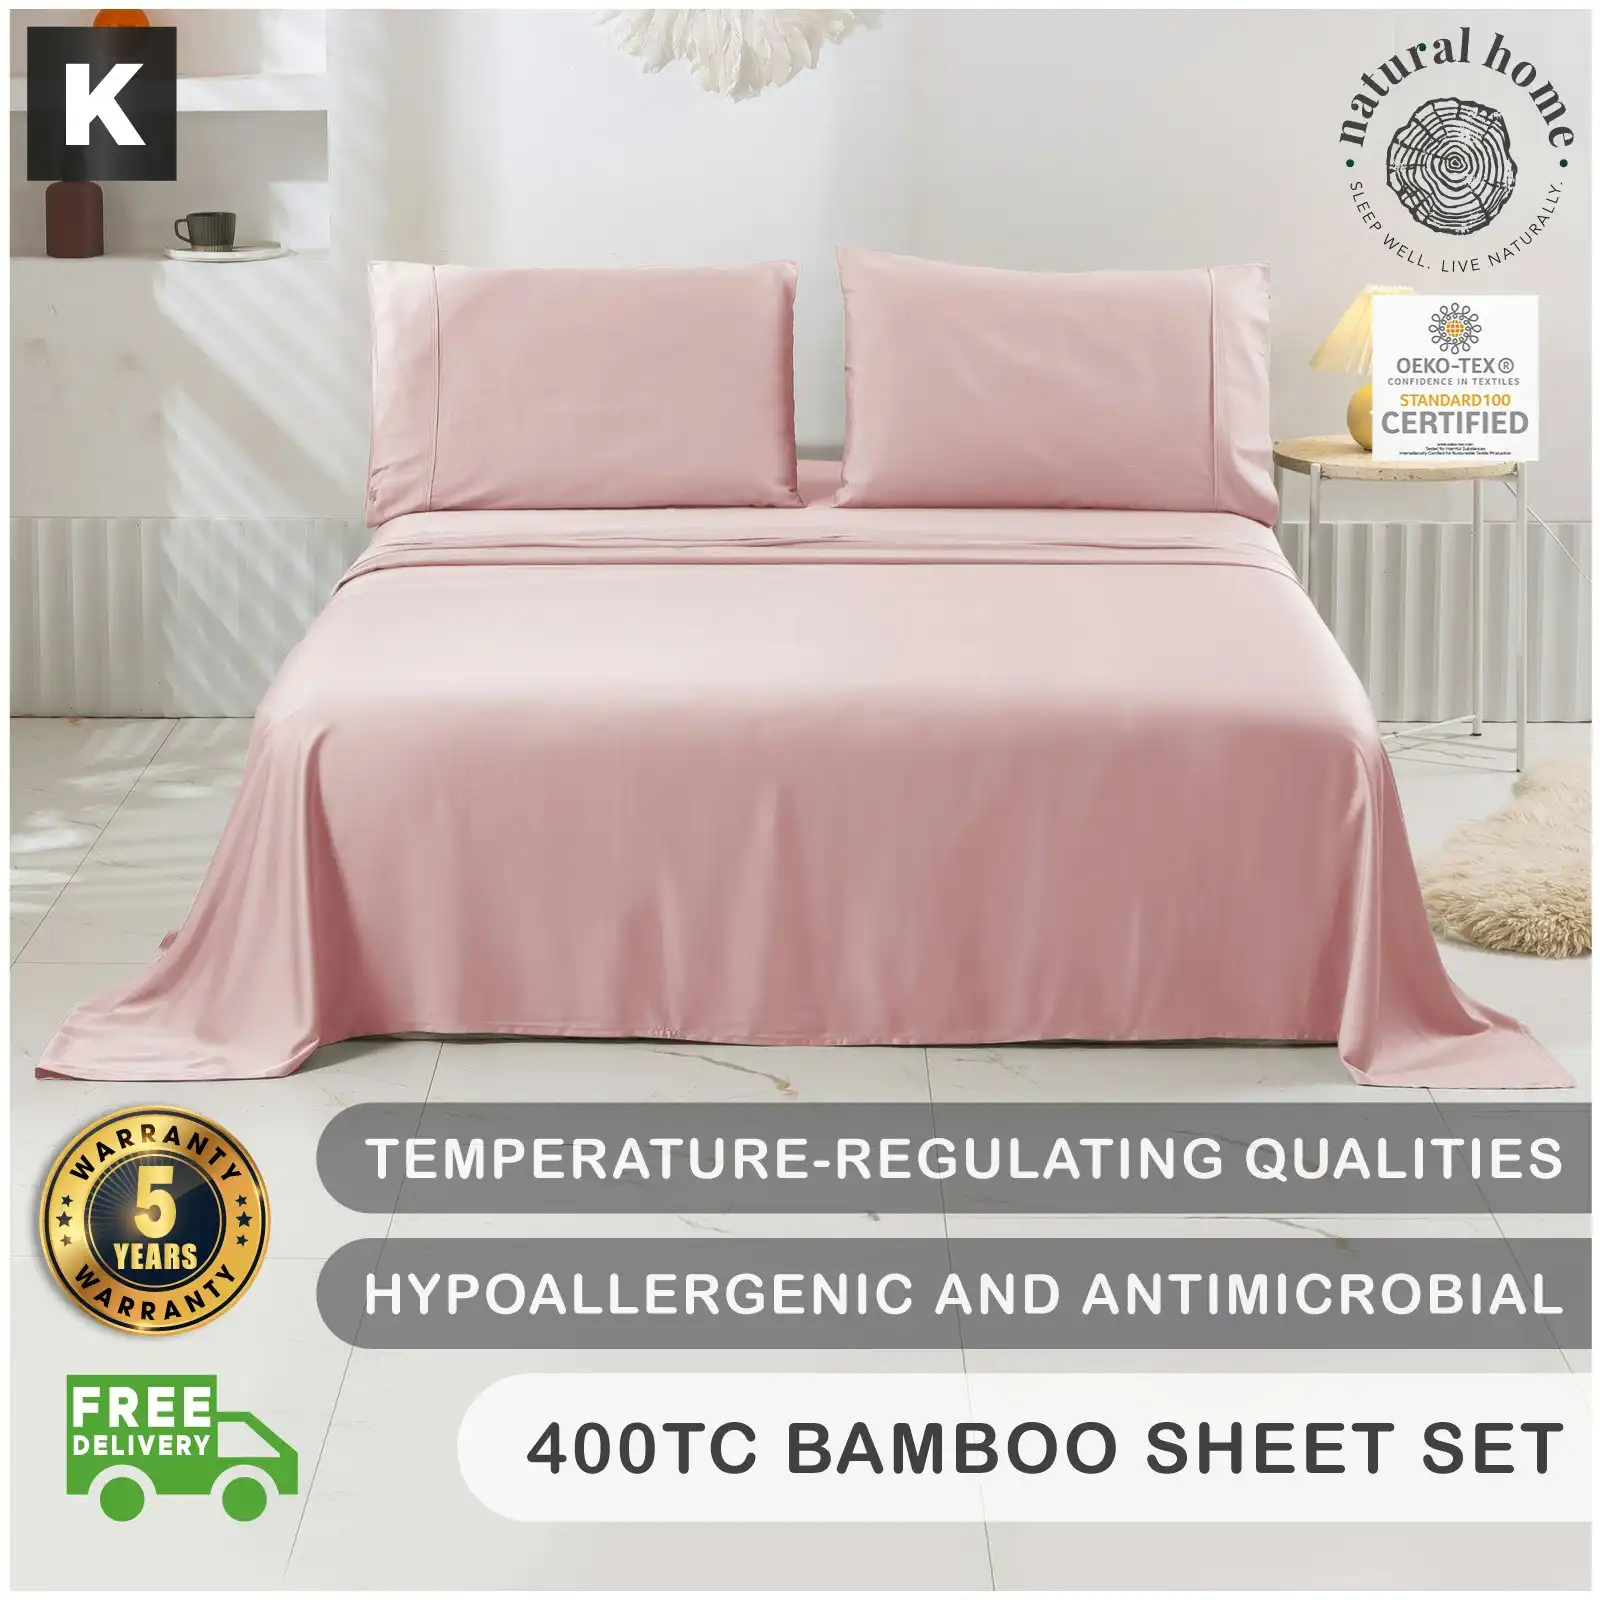 Natural Home Bamboo Sheet Set Blush Pink King Bed